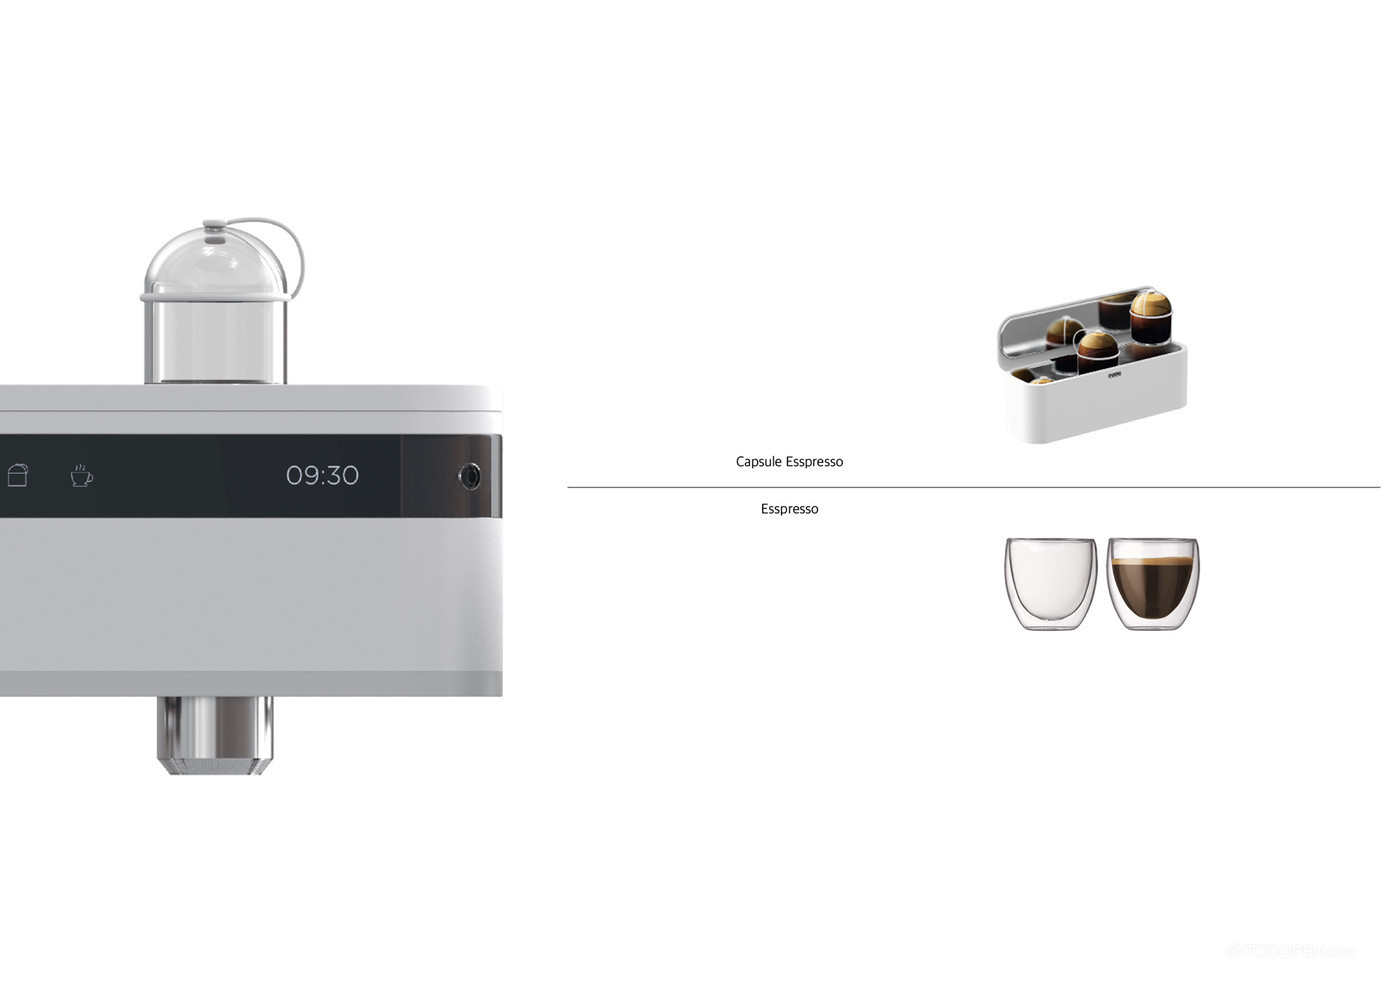 自制咖啡胶囊意式浓缩咖啡机产品设计欣赏-02